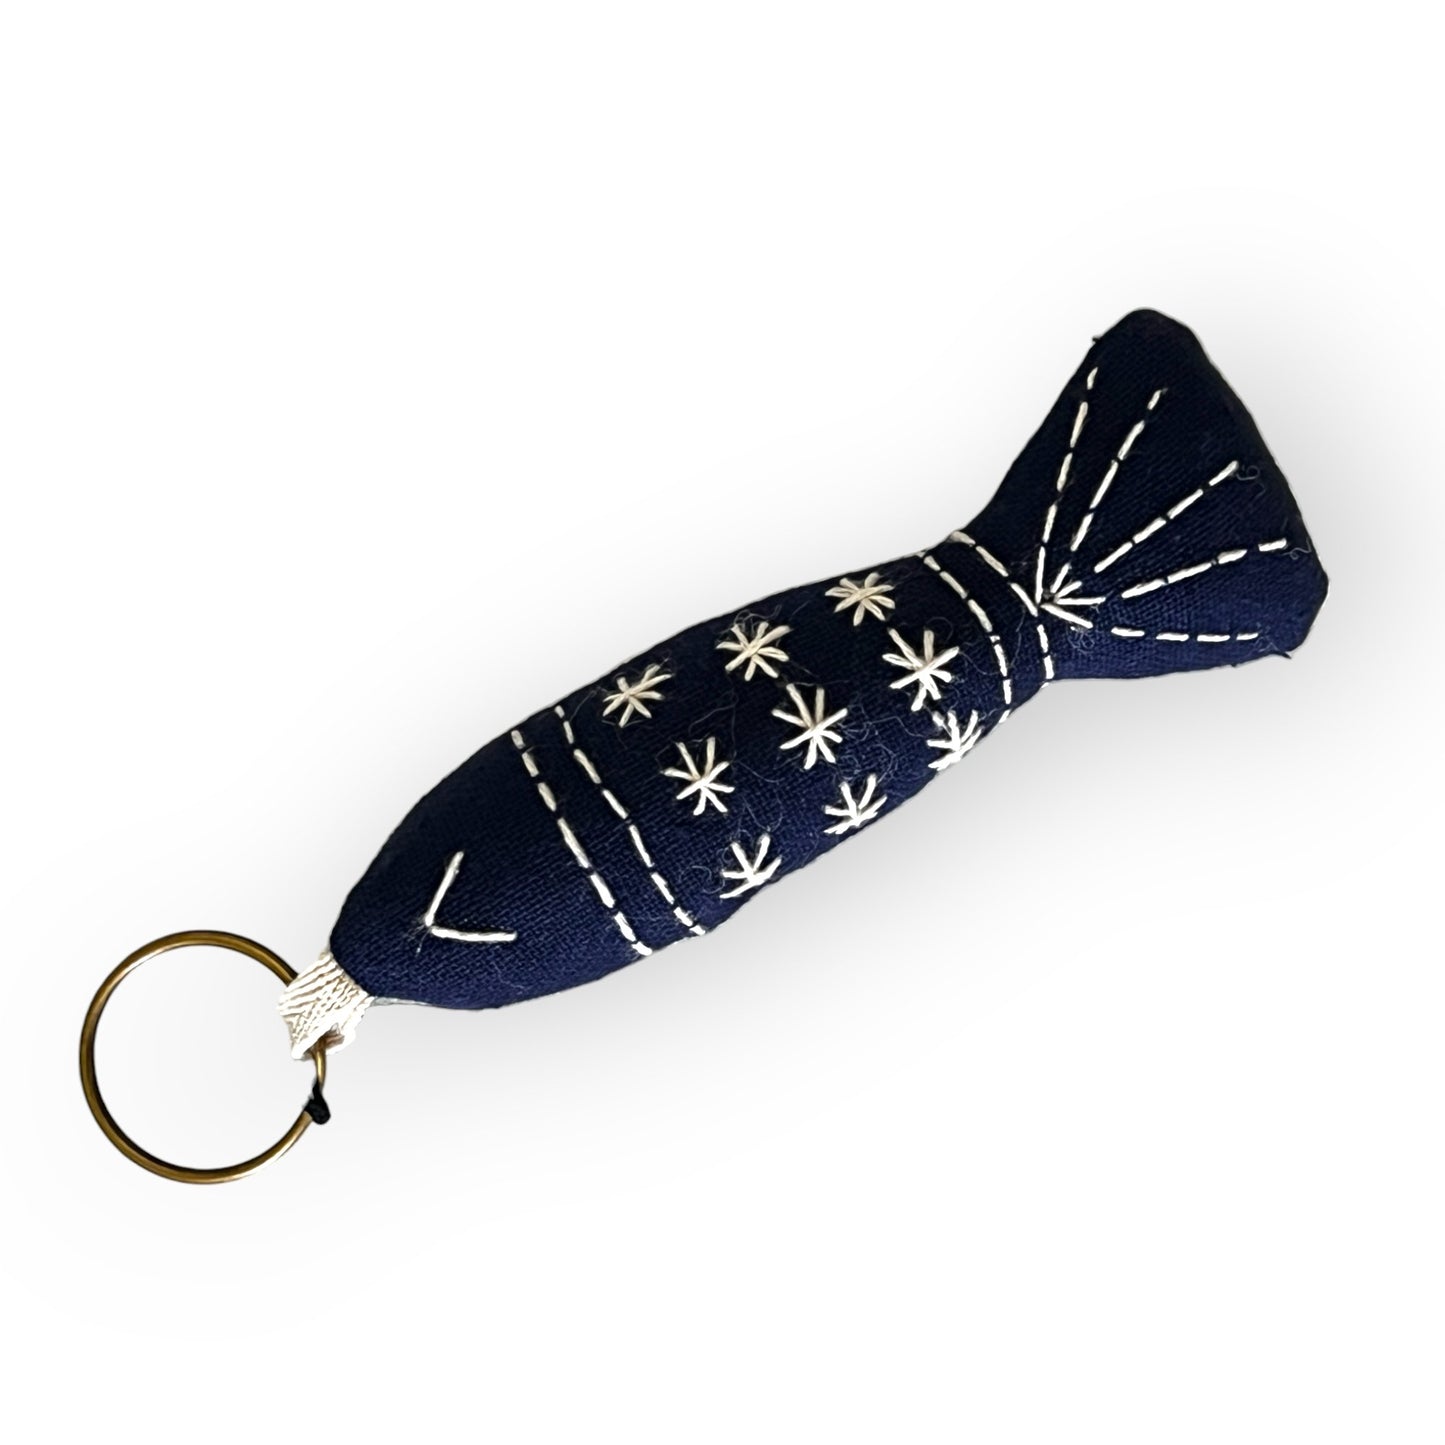 Blue fish fabric key chain - Sundara Joon